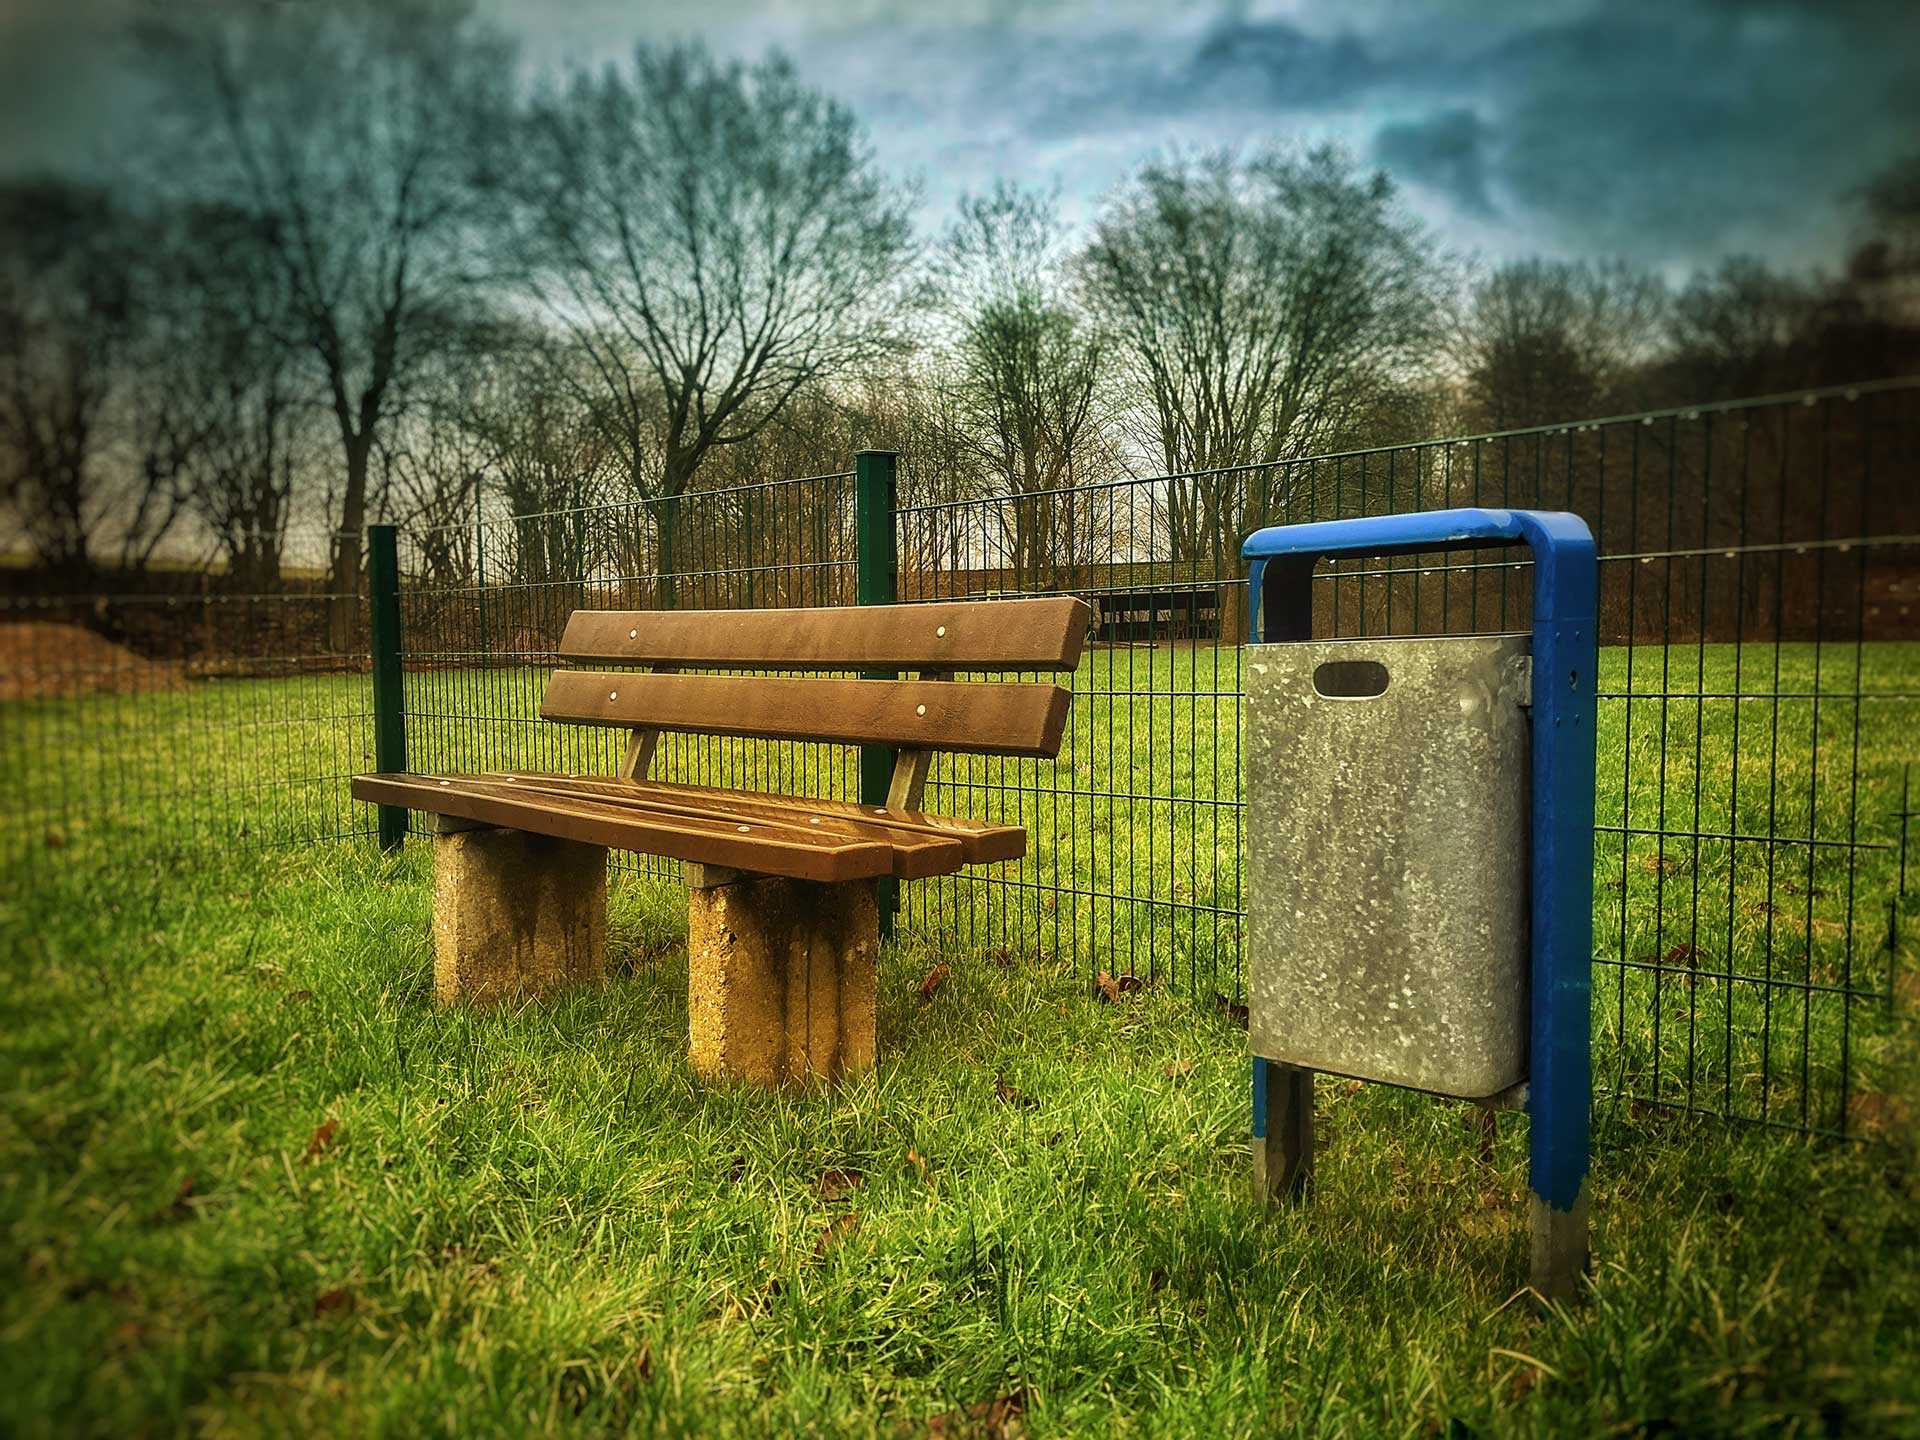 Ein blauer Mülleimer steht neben einer Sitzbank auf einer grünen Wiese. Dahinter ist ein Zaun zu sehen.